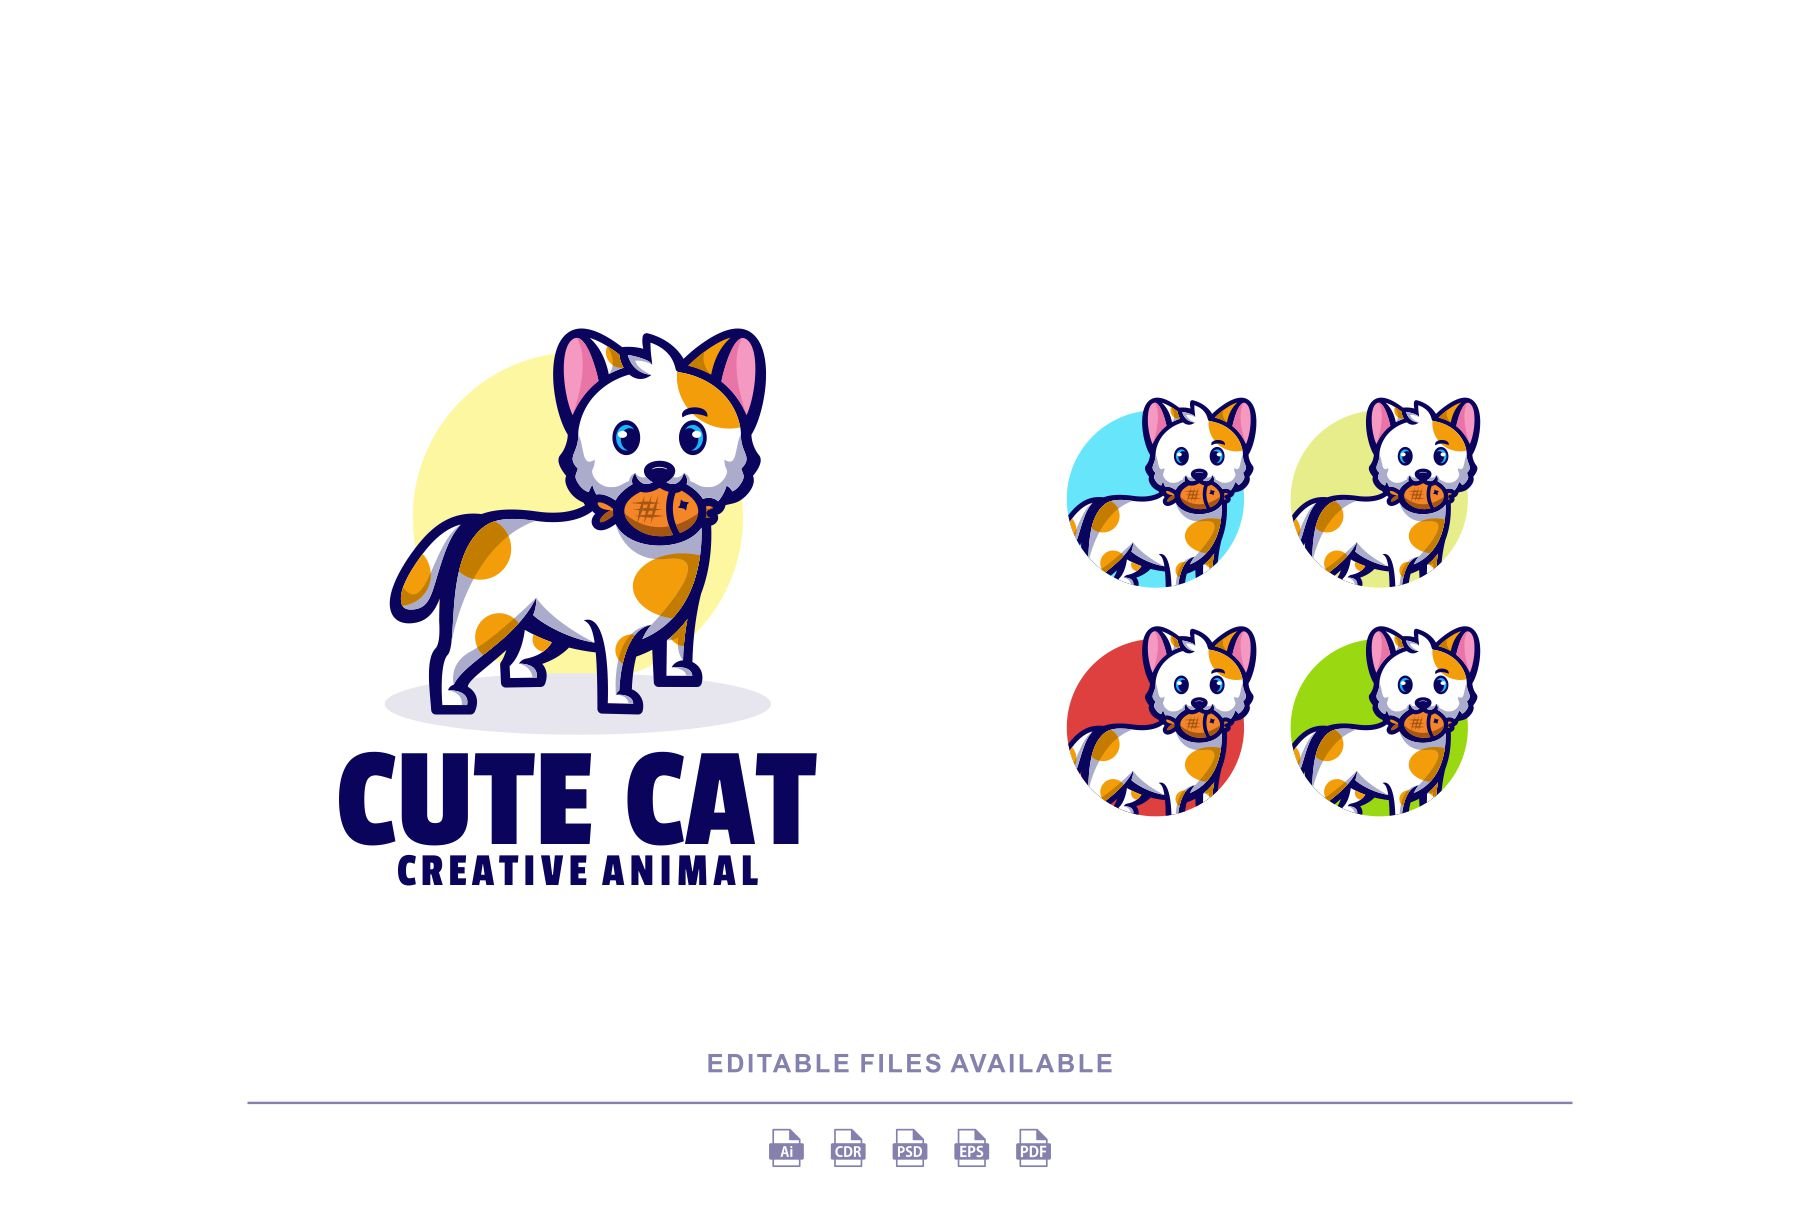 Cute Cat Cartoon Mascot Logo cover image.